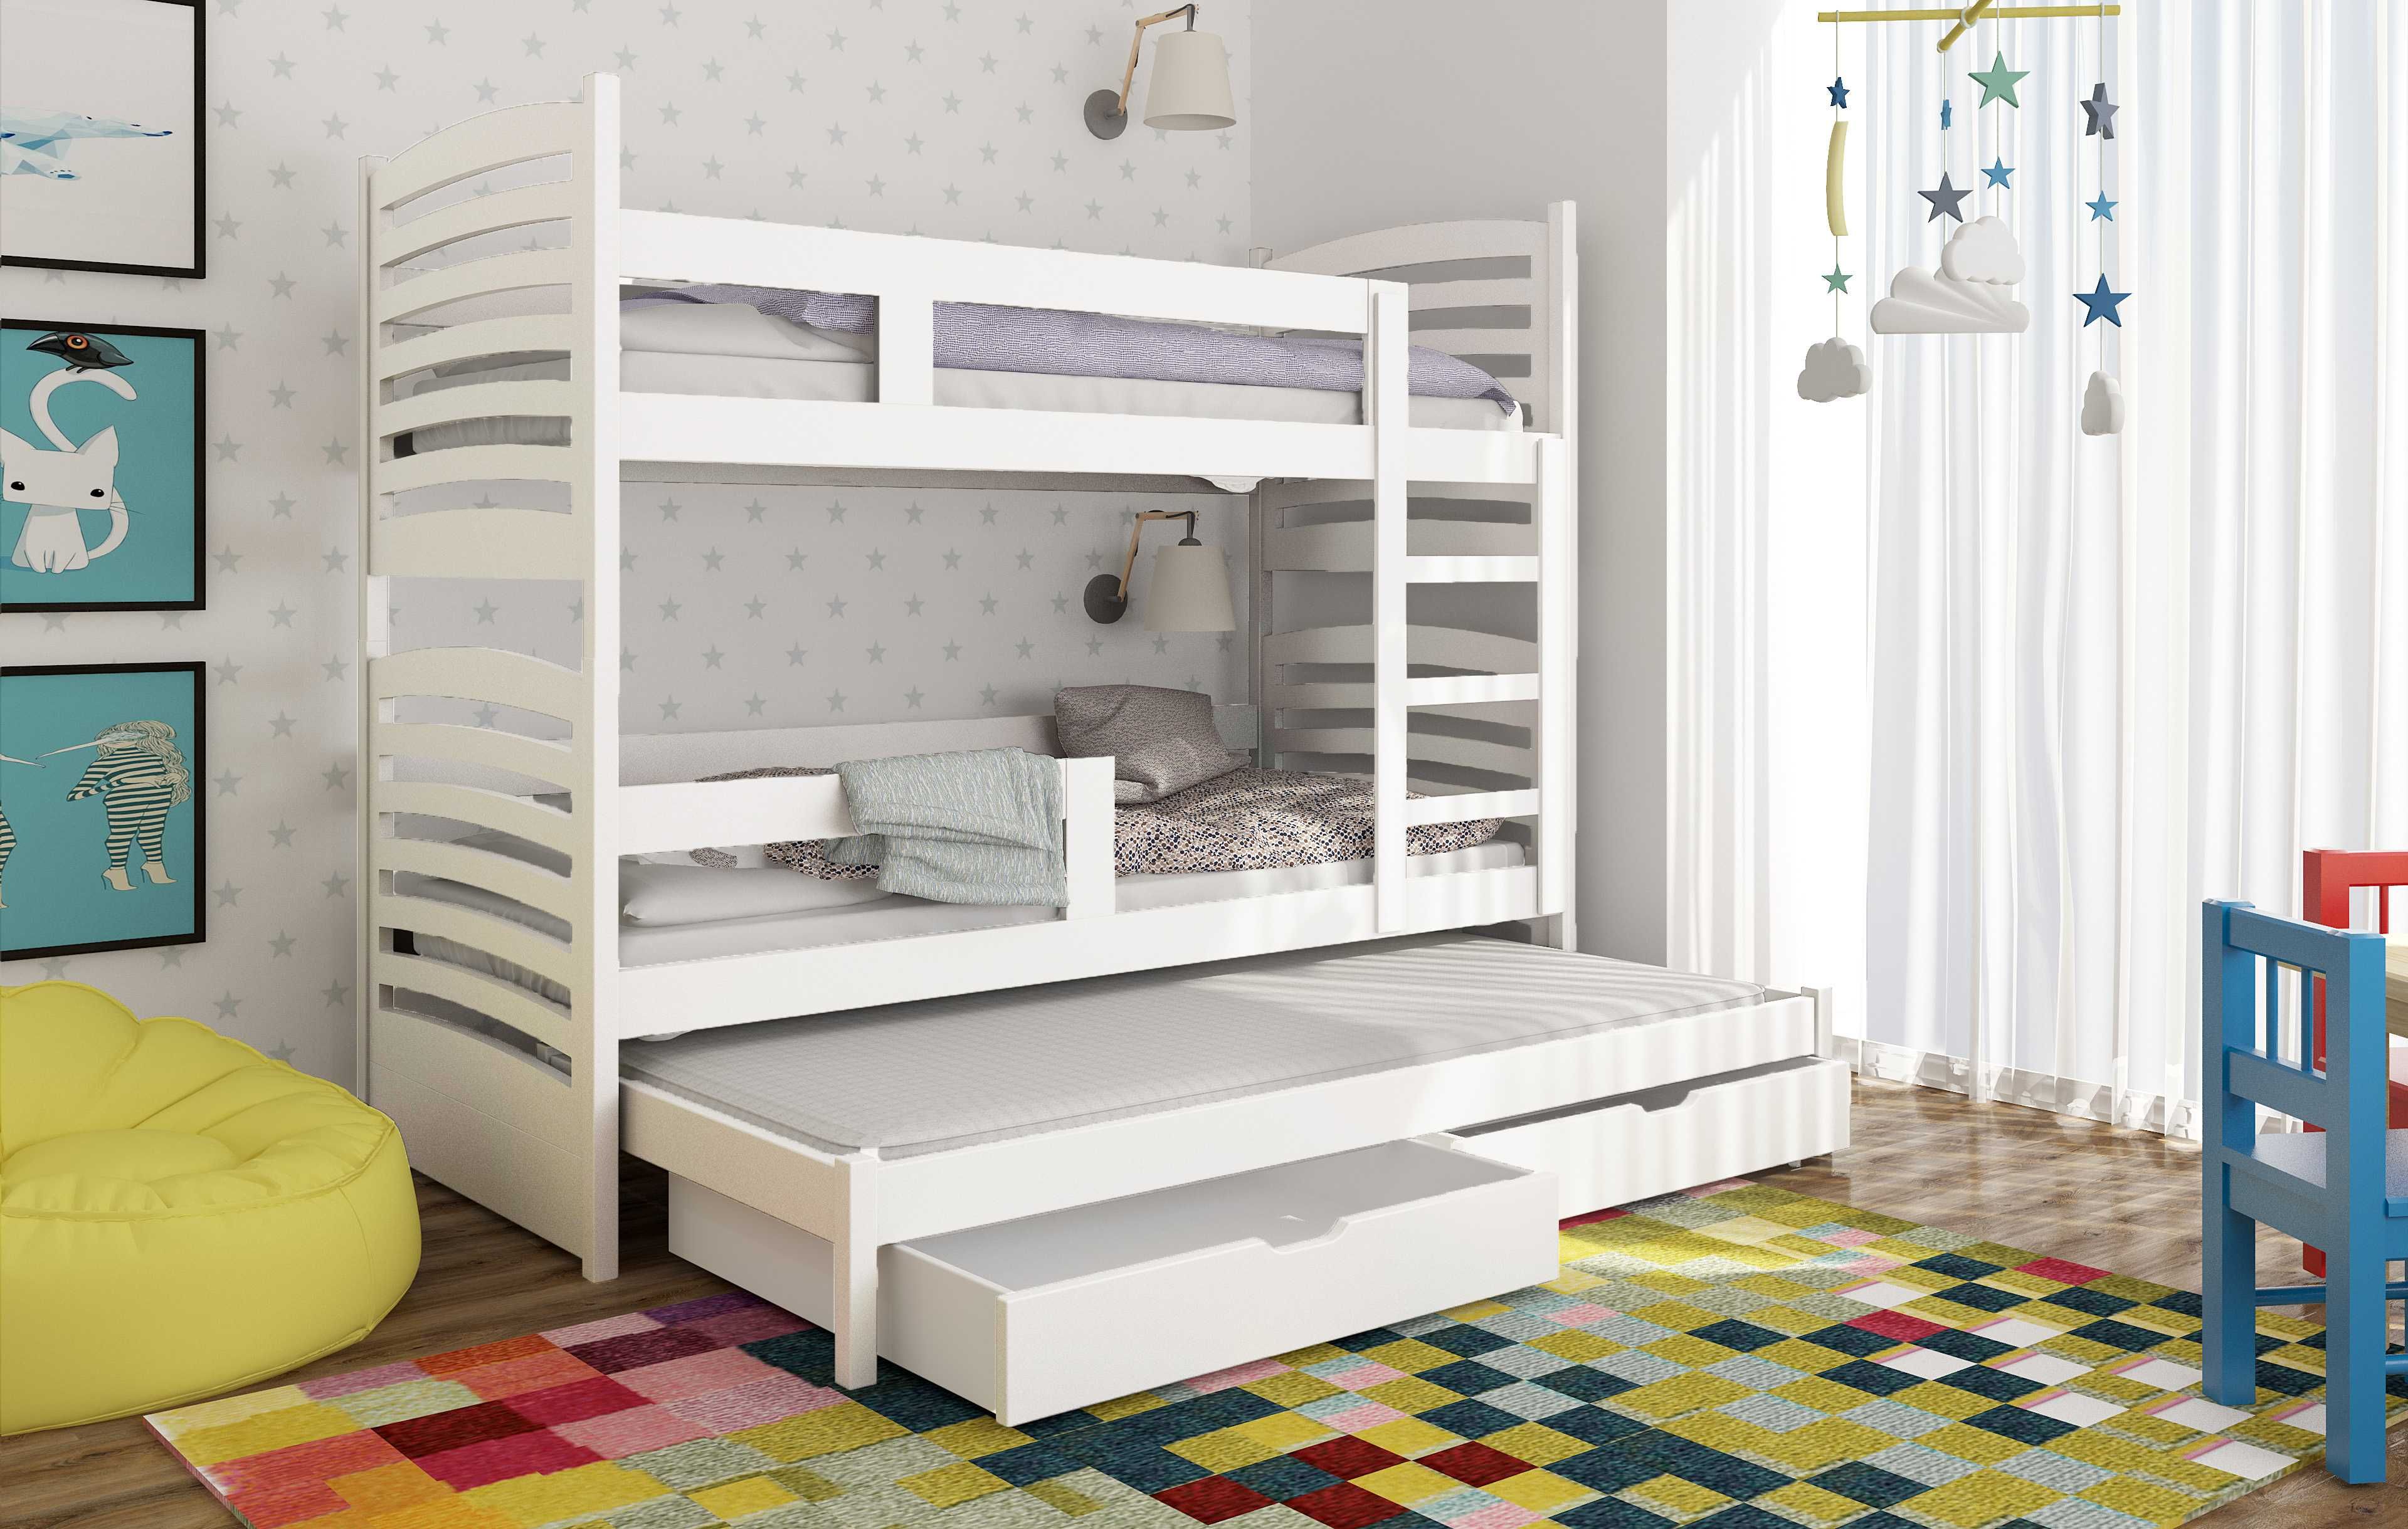 Piętrowe łóżko 3 osobowe Olek! Praktyczne łóżko dla dzieci